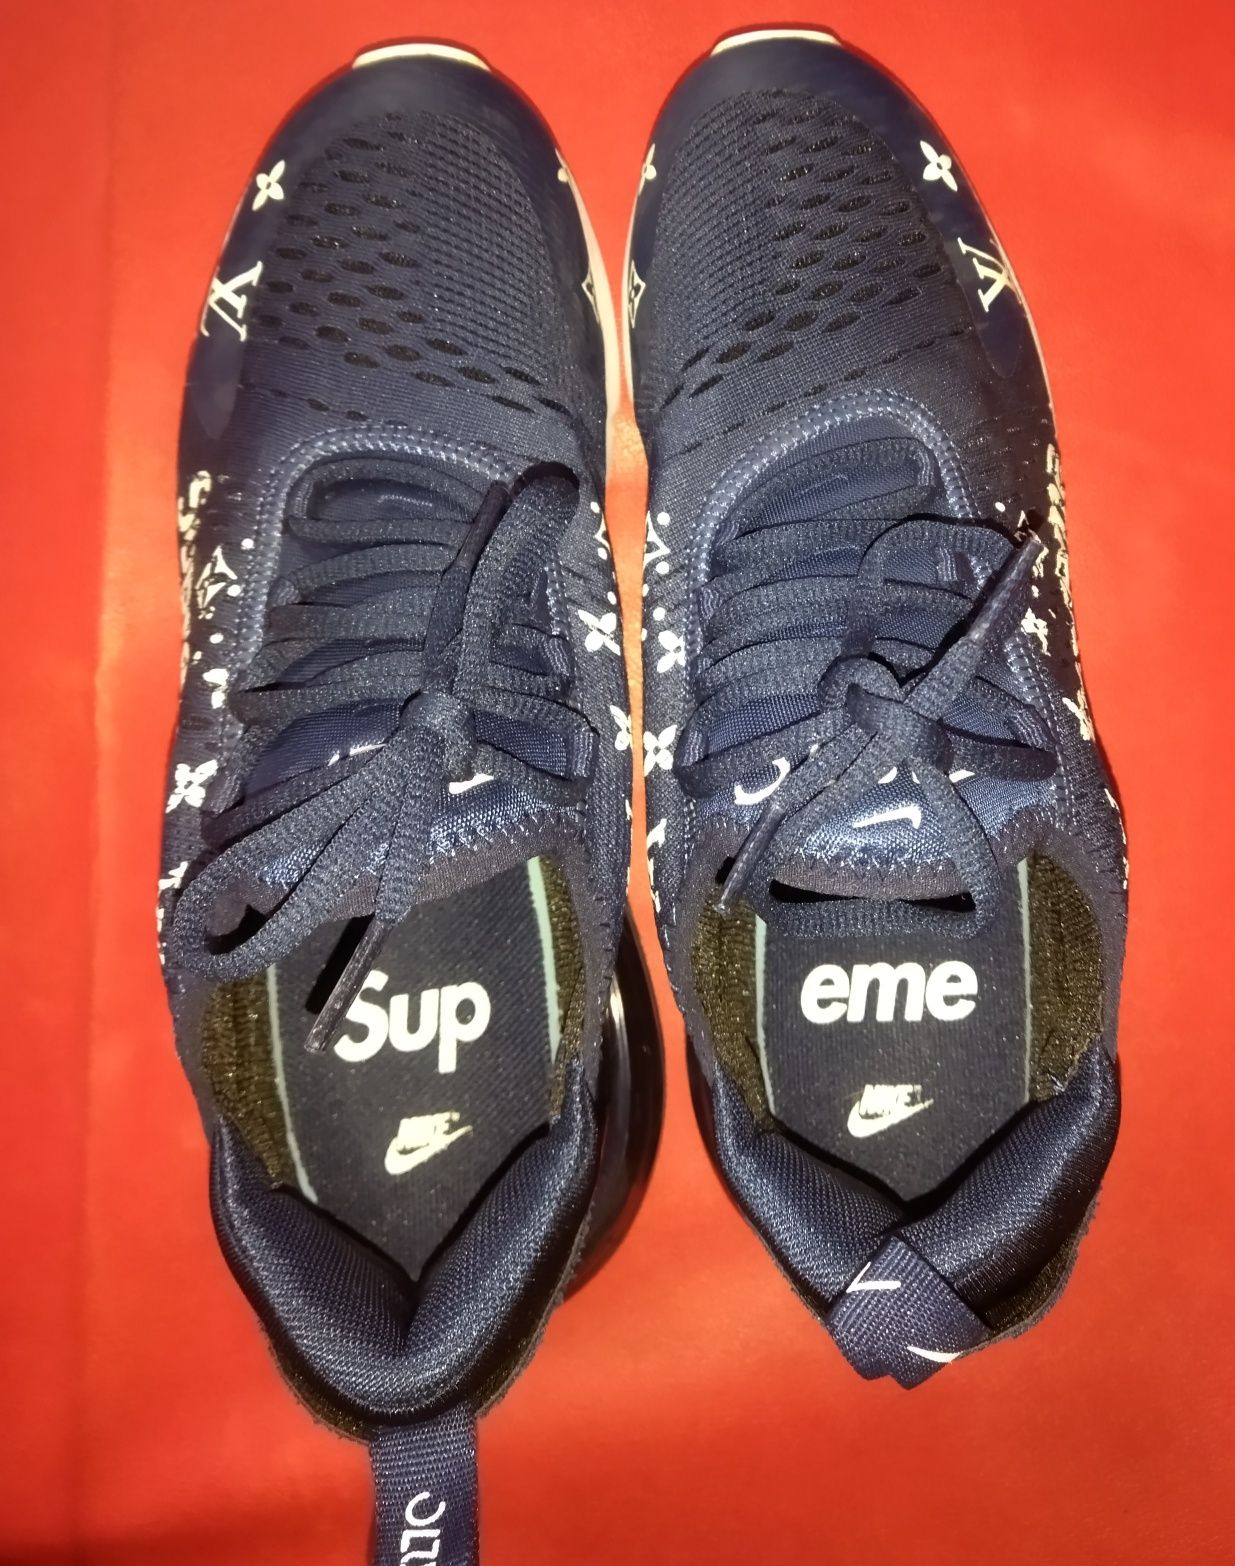 Кросівки Nike Supreme LV розмір 39